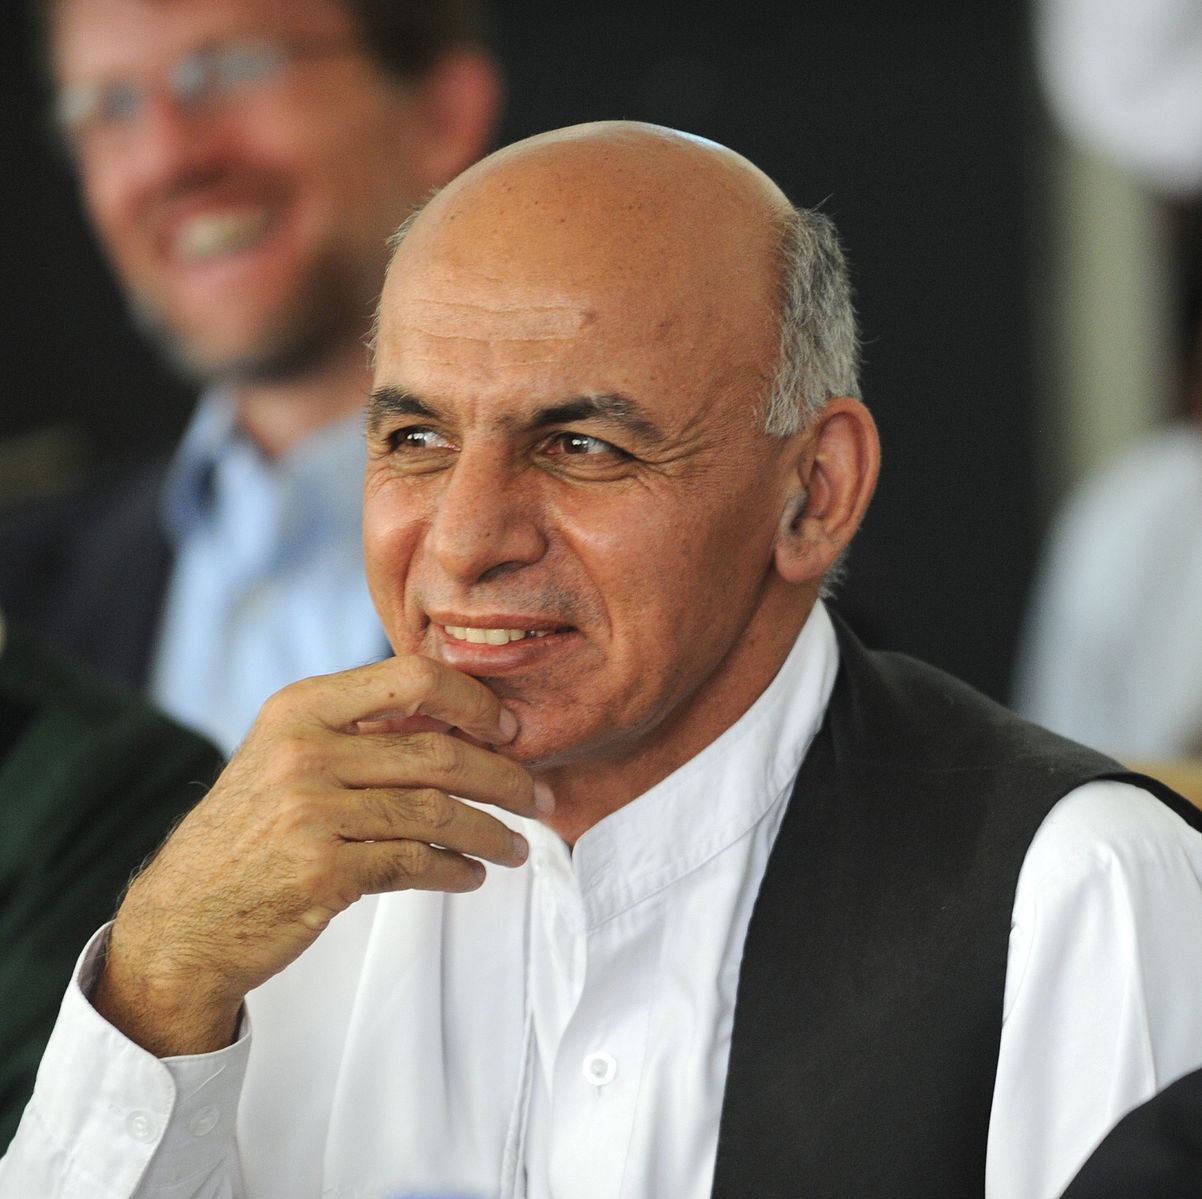 Dr Ashraf Ghani Ahmadzai